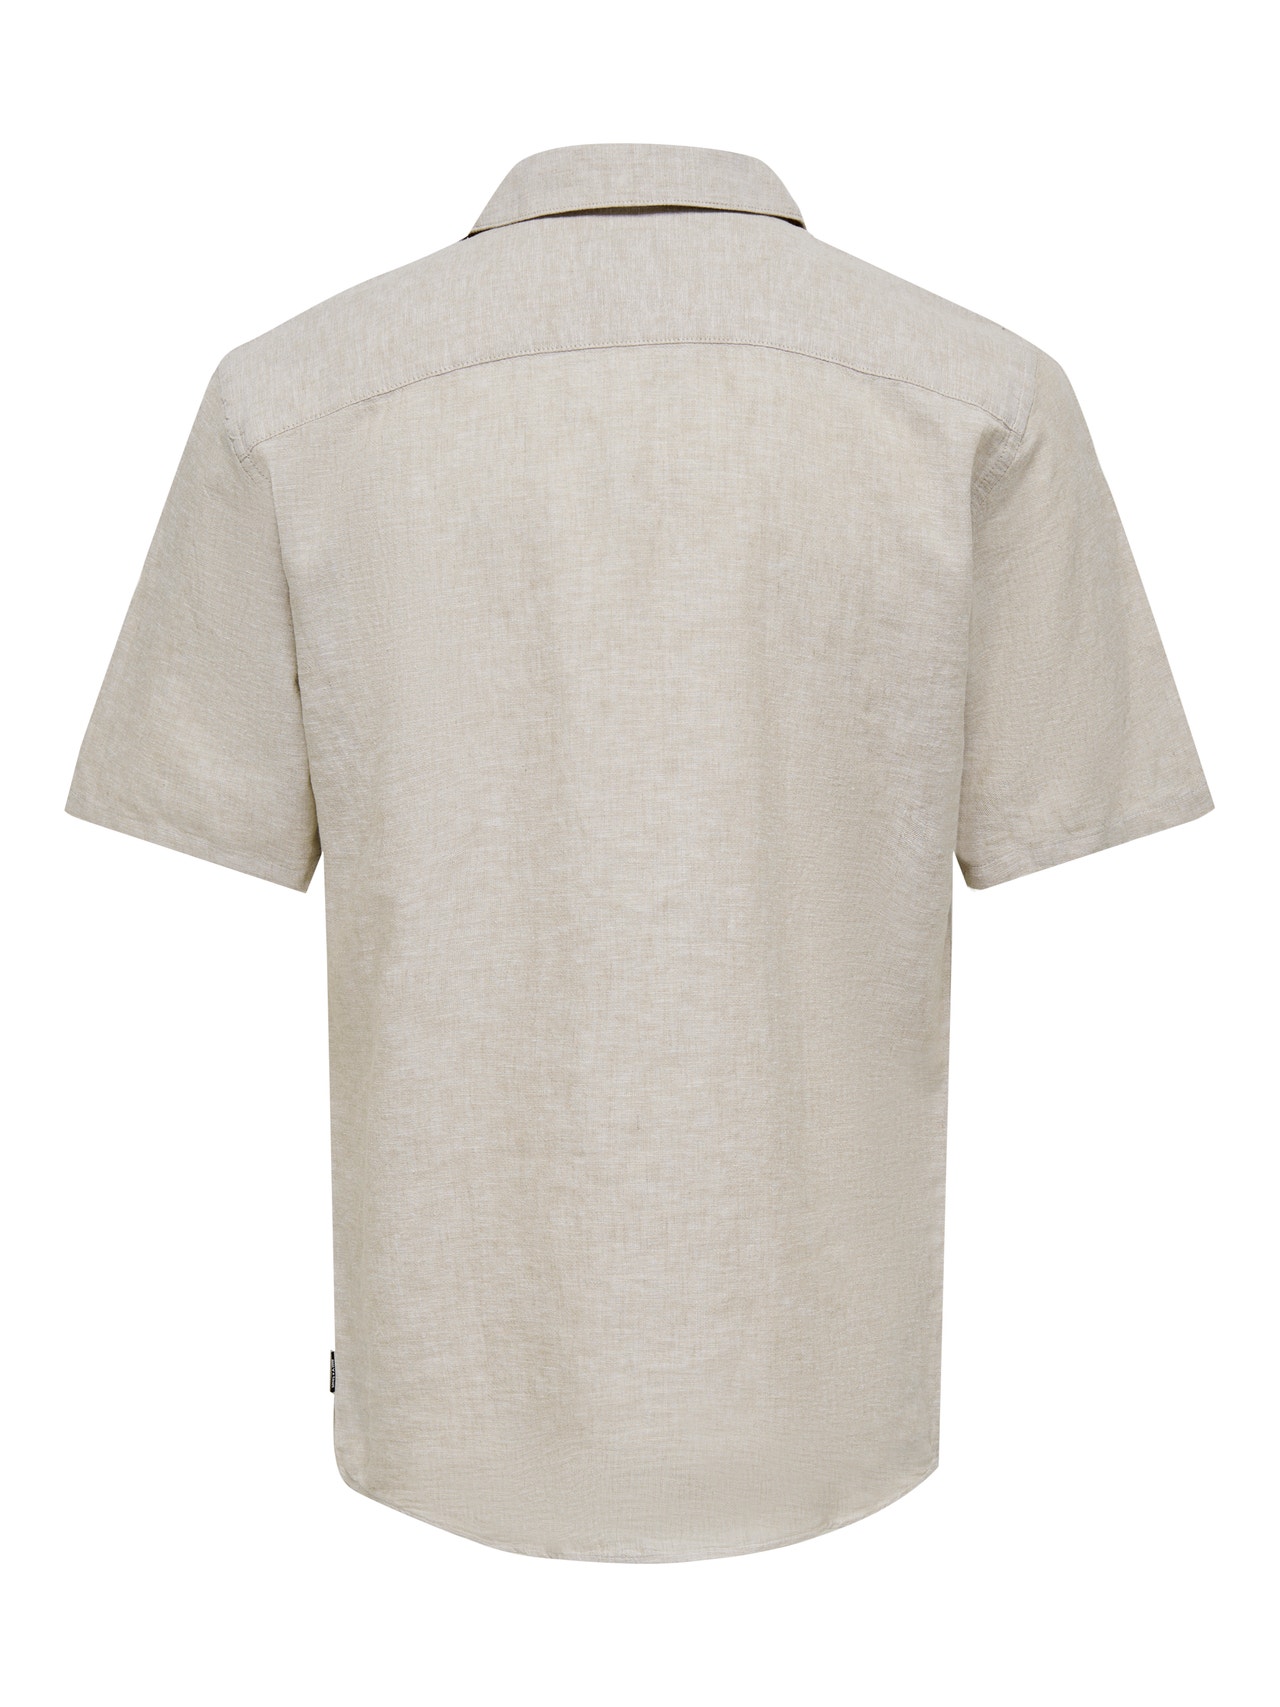 ONLY & SONS Camisas Corte slim Cuello cubano -Chinchilla - 22025116